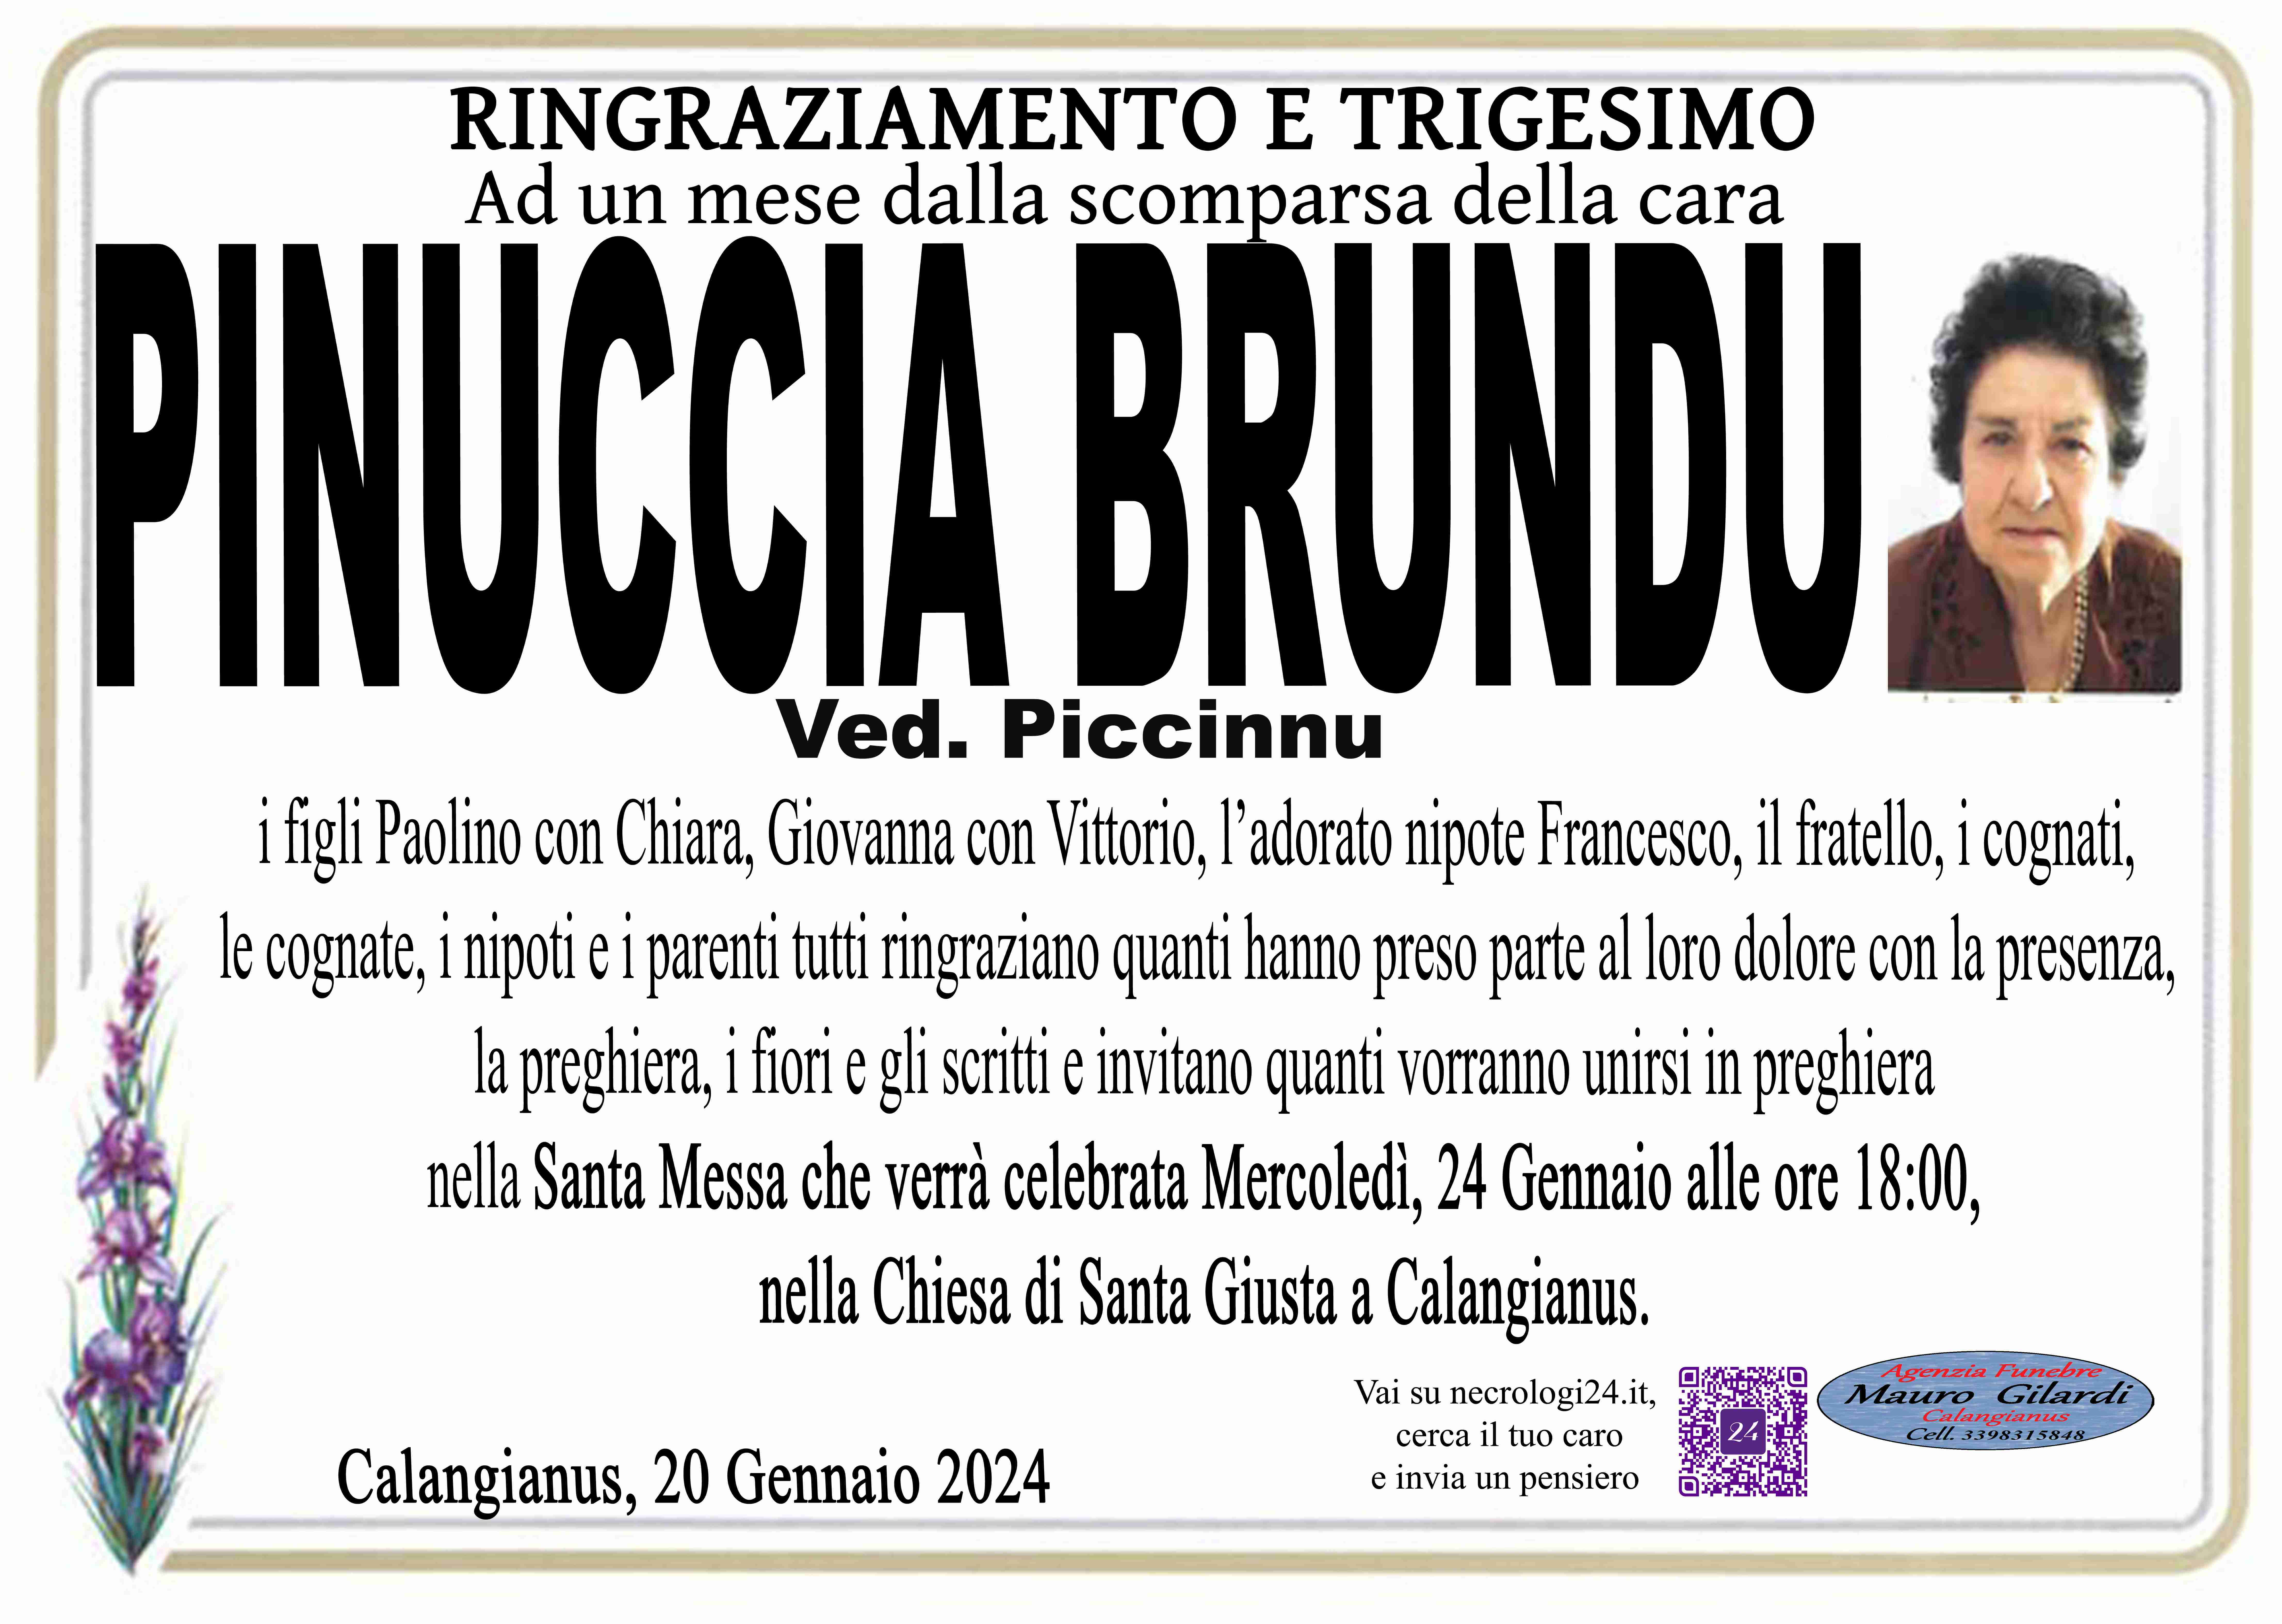 Pinuccia Pasqua Brundu